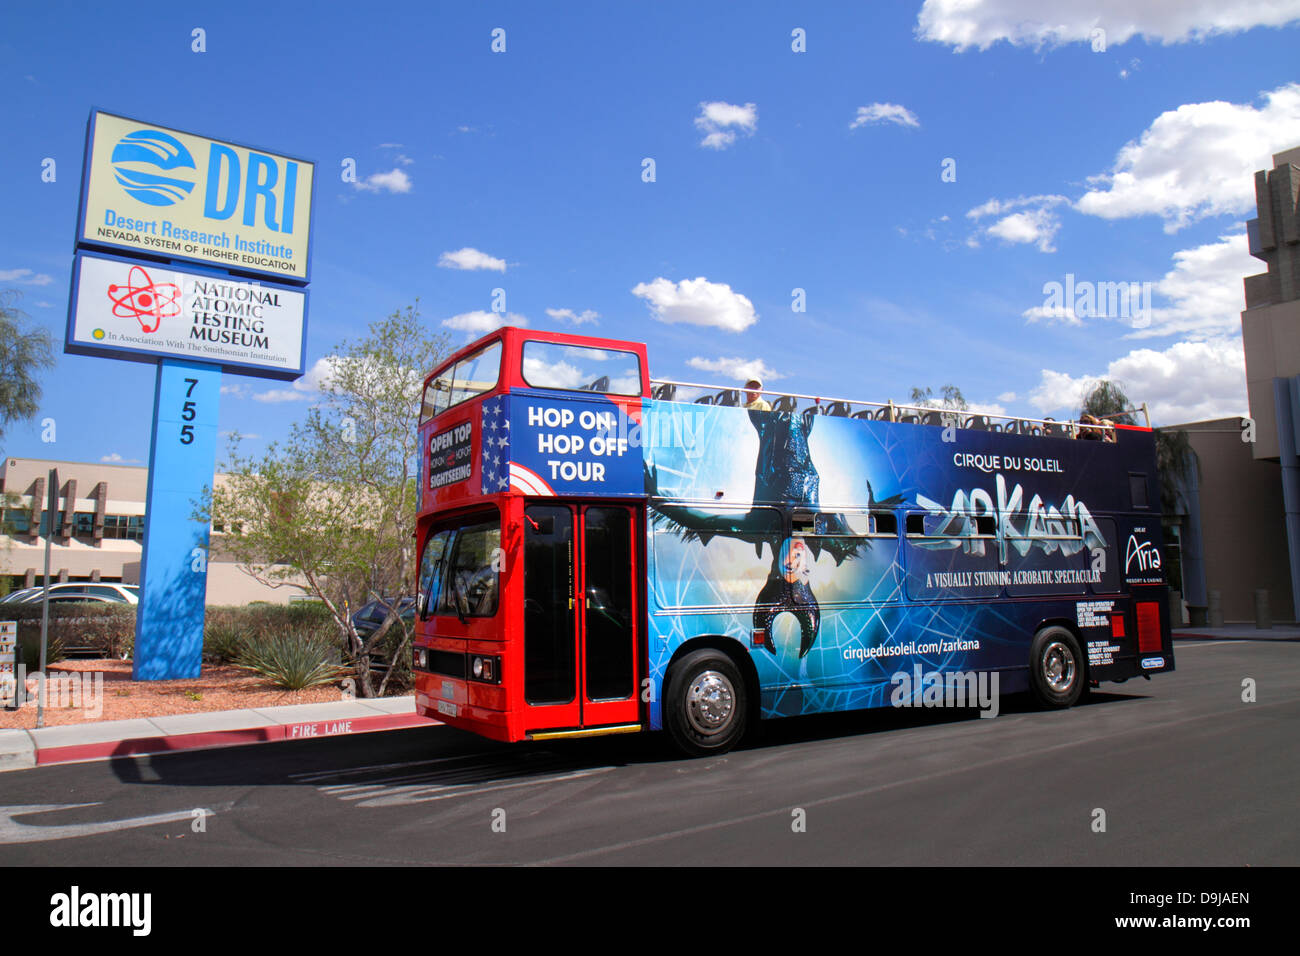 Las Vegas Nevada, Flamingo Road, National Atomic Testing Museum, Entwicklung von Atomwaffen, Bereich 51, Bus, Bus, Doppeldecker, Hop-on-Hop-off, Besucher reisen Stockfoto